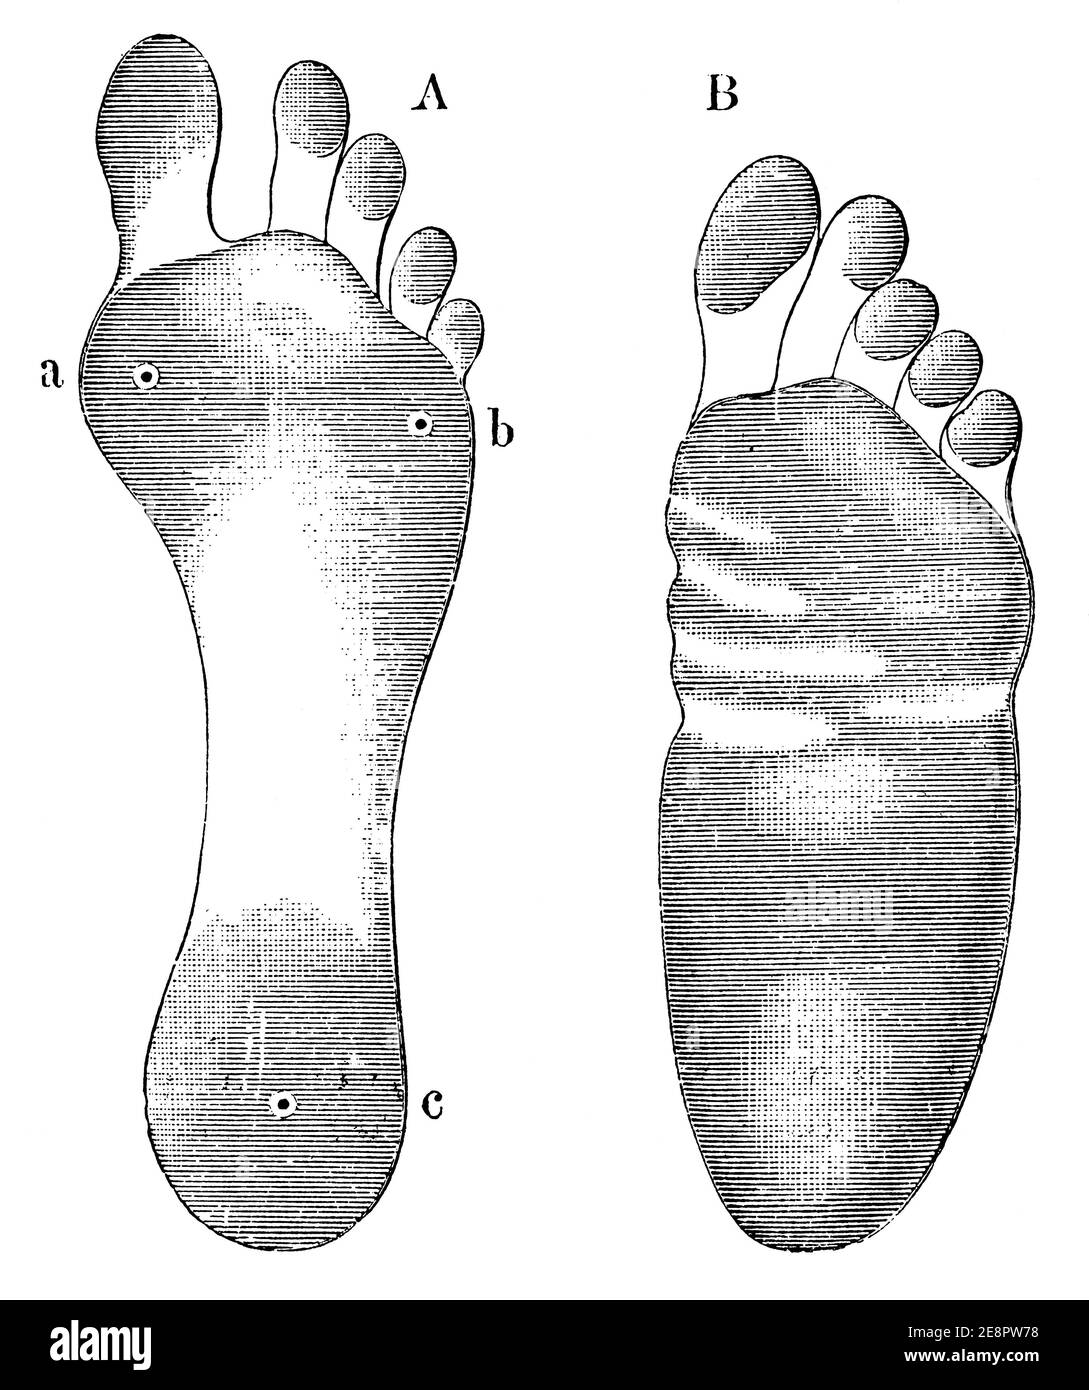 Une empreinte d'un pied sain (à gauche) et d'un pied à pieds plats (à droite). Illustration du 19e siècle. Allemagne. Arrière-plan blanc. Banque D'Images